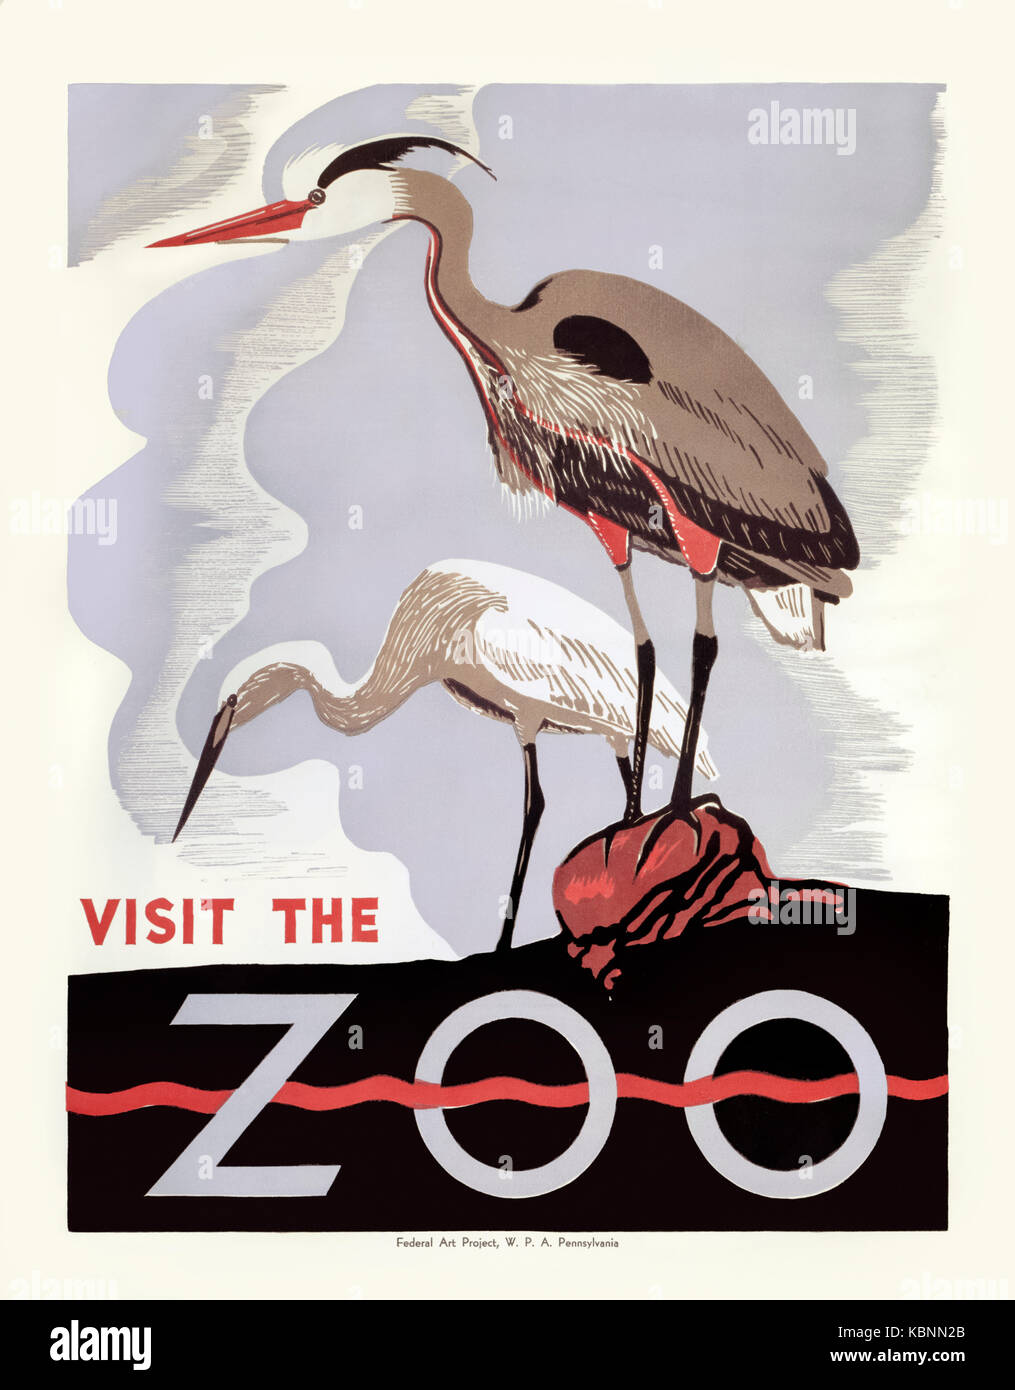 "Visitez le Zoo" 1936 affiche pour le Zoo de Philadelphie dispose d''une estampe de deux hérons. Produit sous le gouvernement fédéral Numéro Un projet parrainé par la Works Progress Administration (WPA), créé en 1935 dans le cadre du New Deal du président Franklin D. Roosevelt pour lutter contre la grande dépression. Banque D'Images